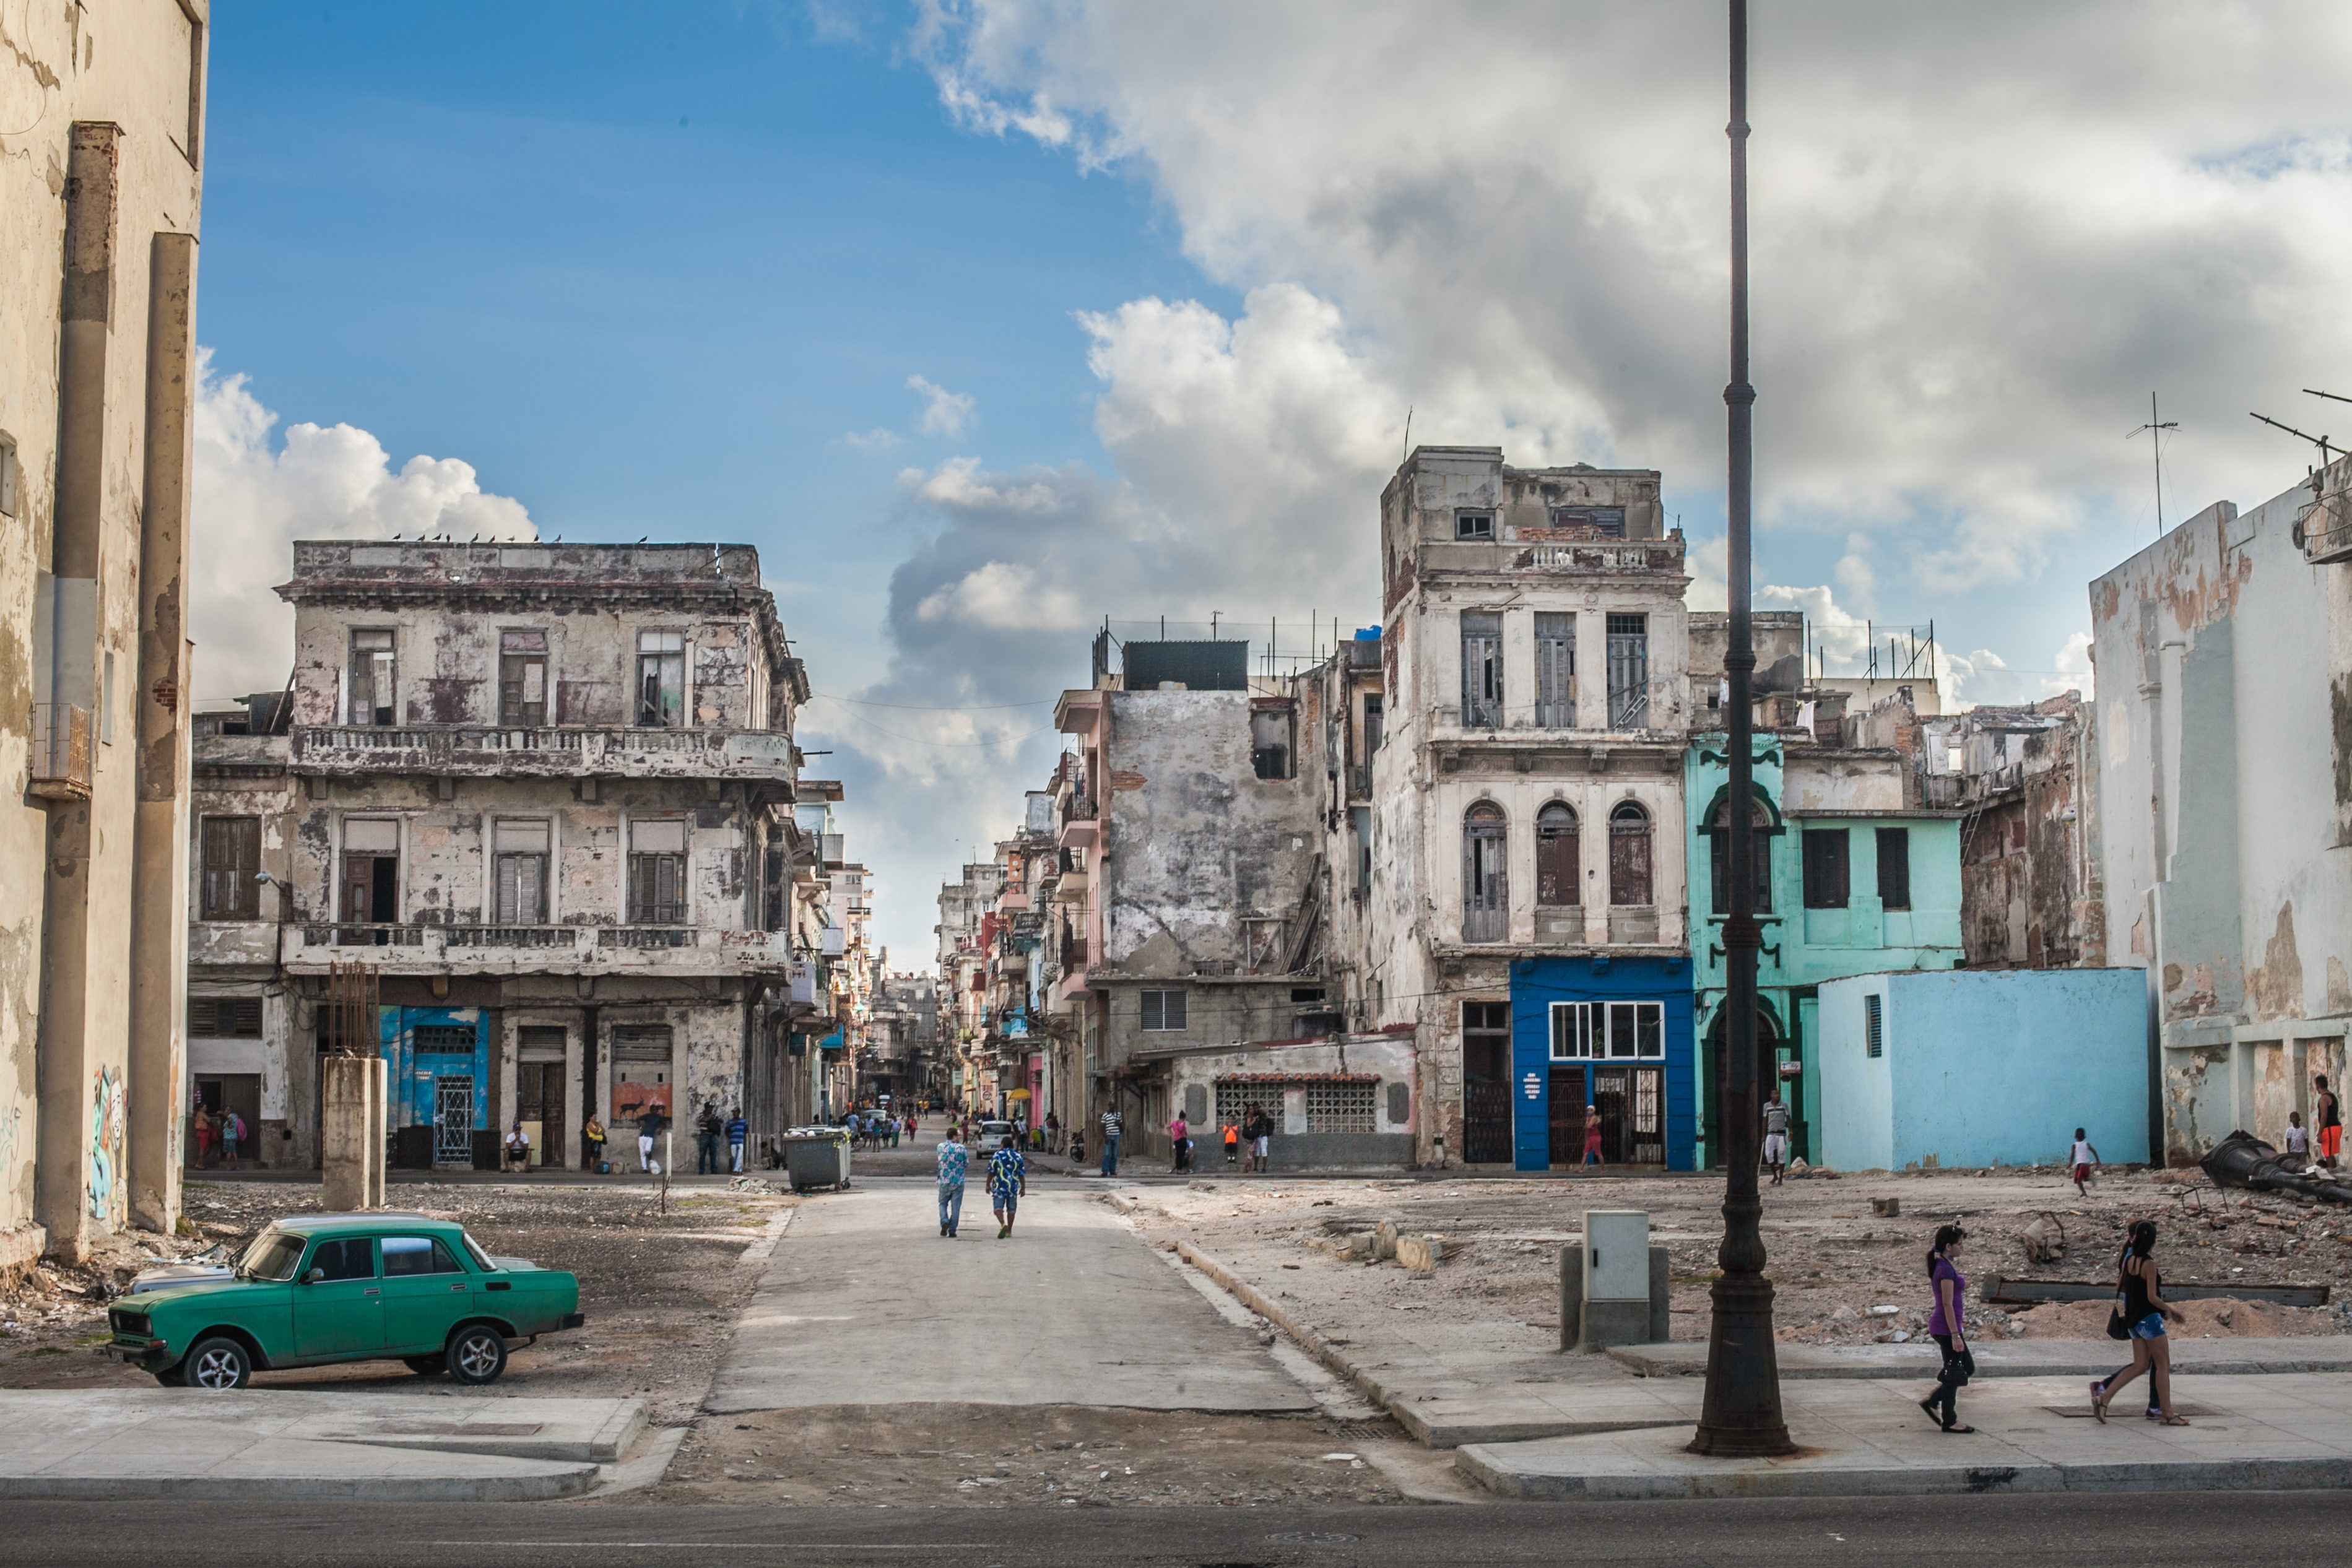 20150118 - Cuba - Havana - 103.jpg